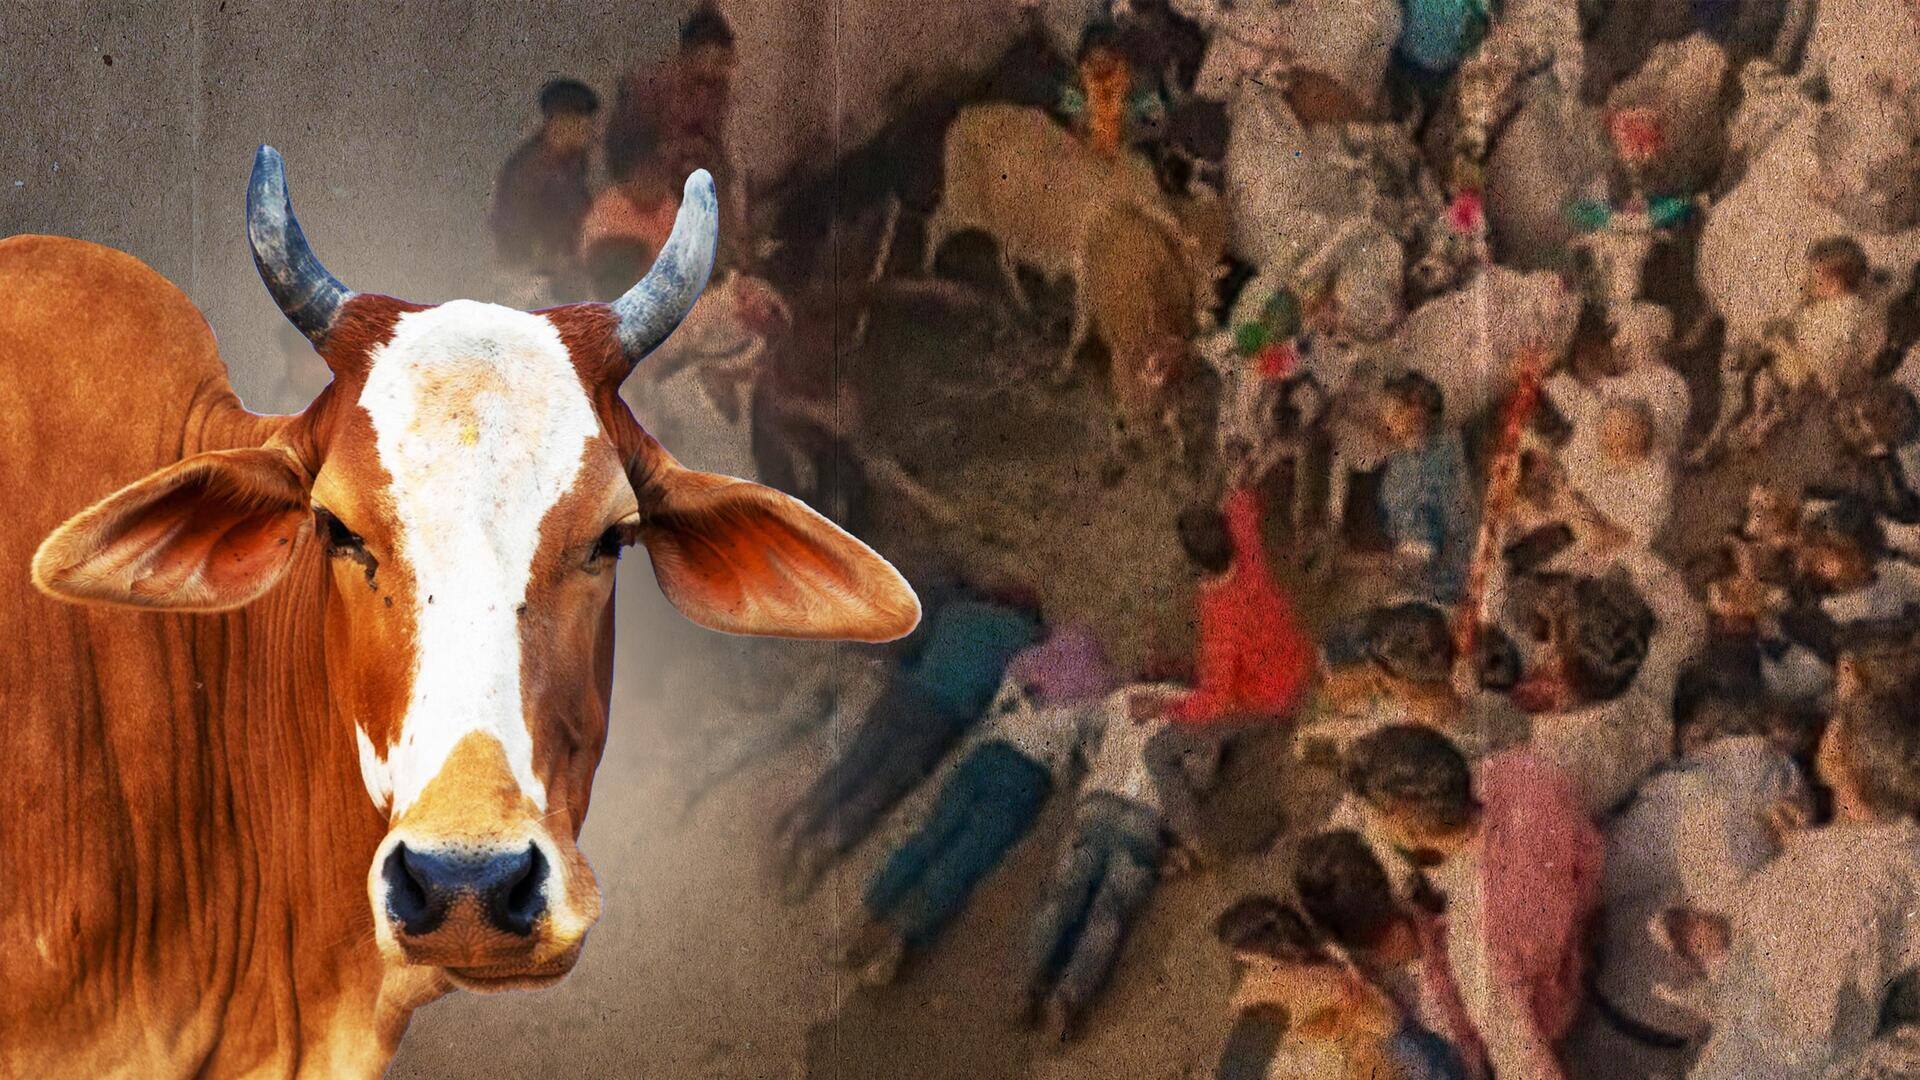 मध्य प्रदेश में अनोखी परंपरा, दिवाली के अगले दिन गायों से खुद को कुचलवाते हैं लोग